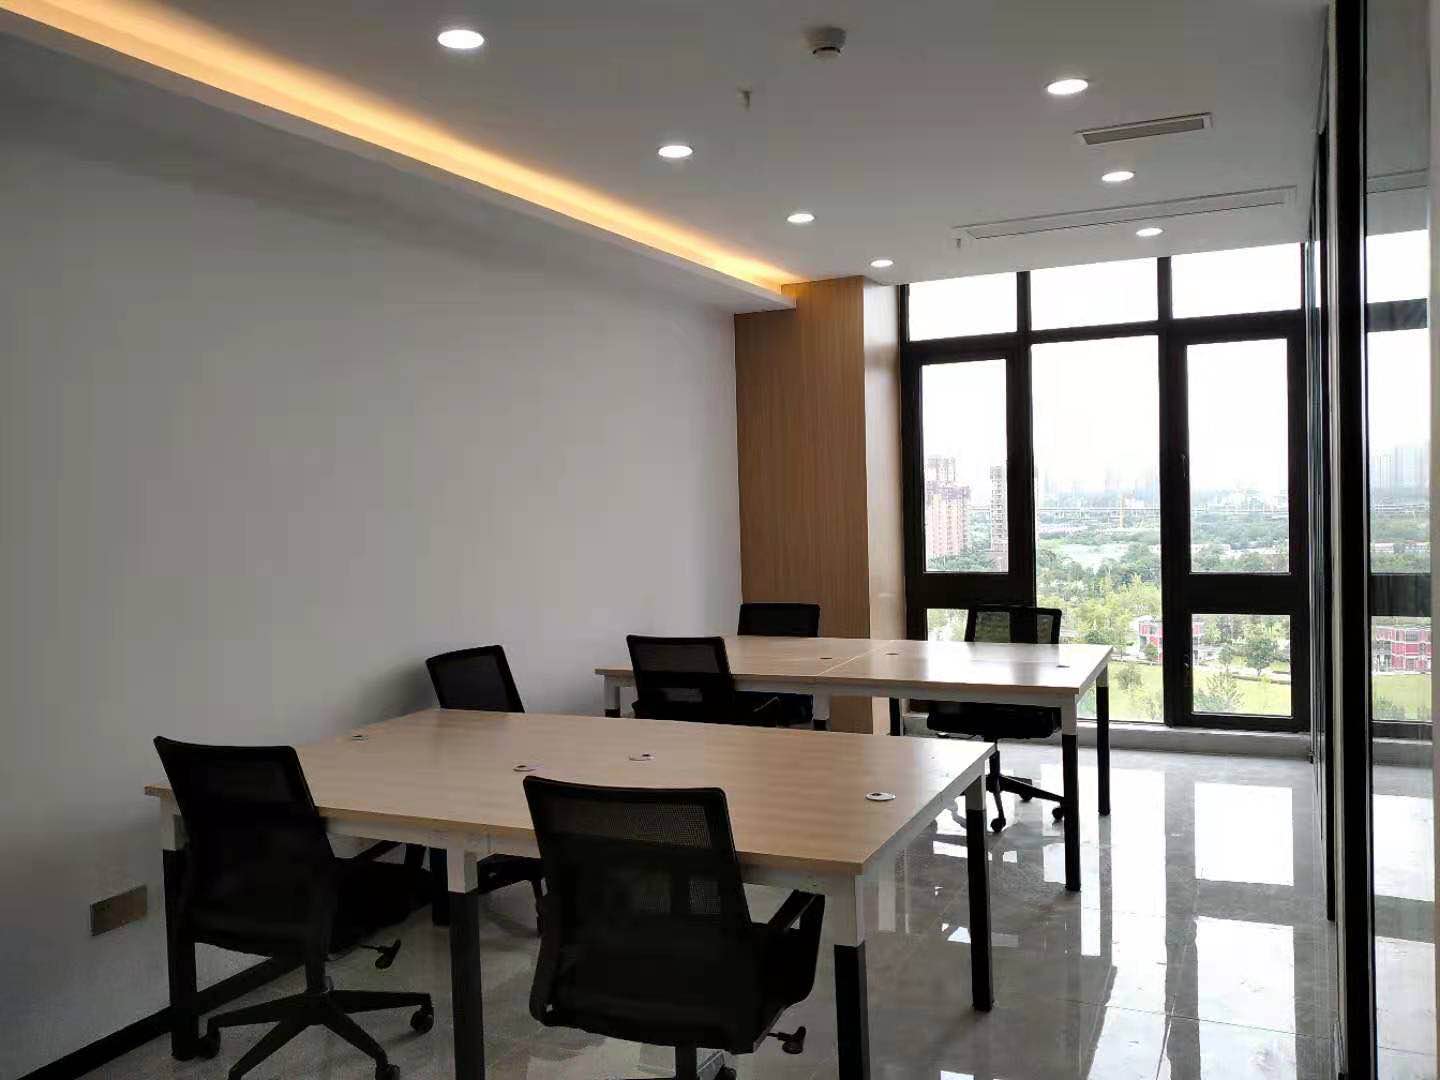 创业首选 成华区龙光世纪中心精装小面积办公室出租